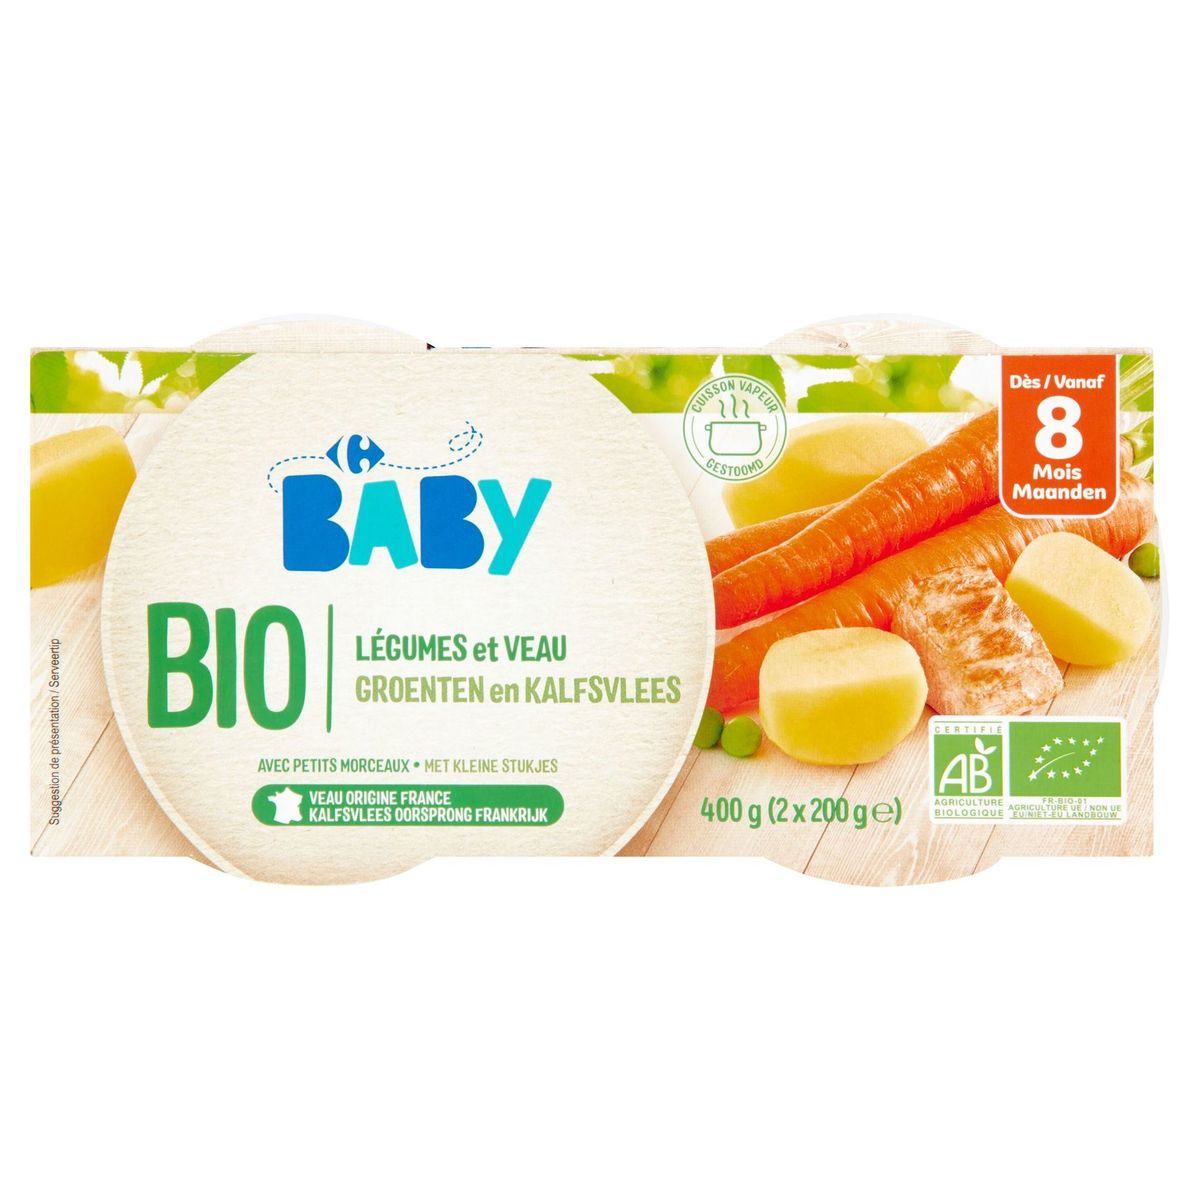 Carrefour Baby Bio Groenten en Kalfsvlees vanaf 8 Maanden 2 x 200 g